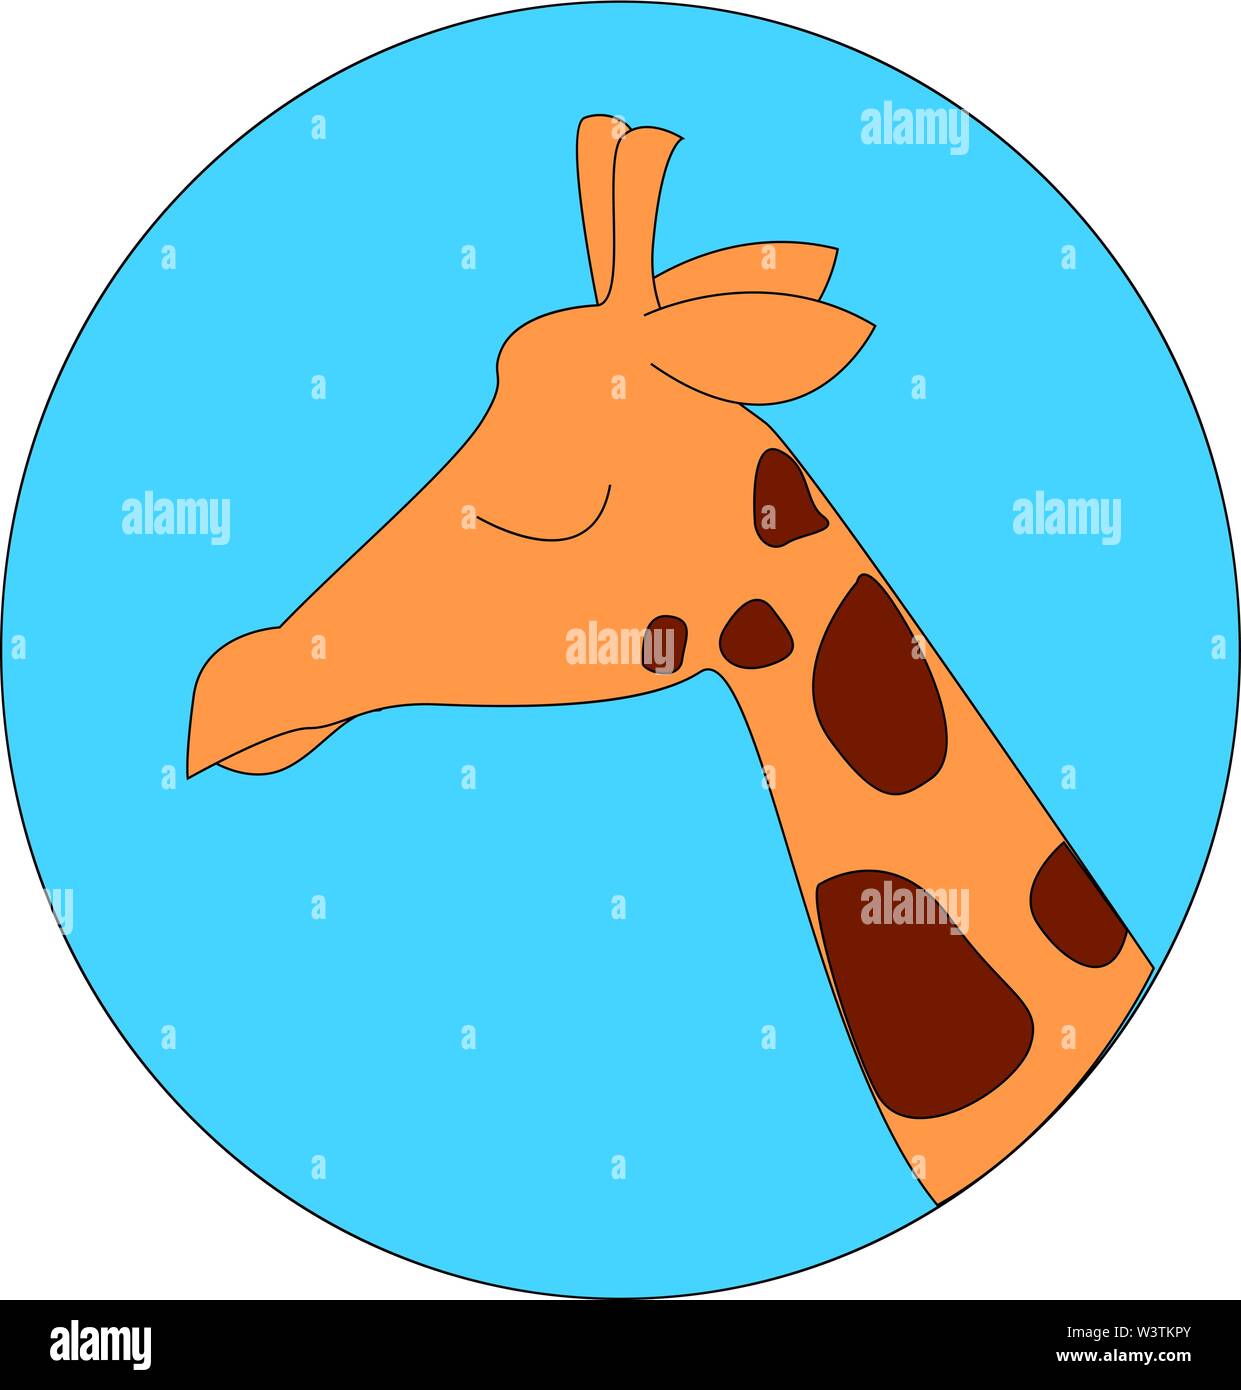 Sleeping giraffe, illustration, vector on white background. Stock Vector